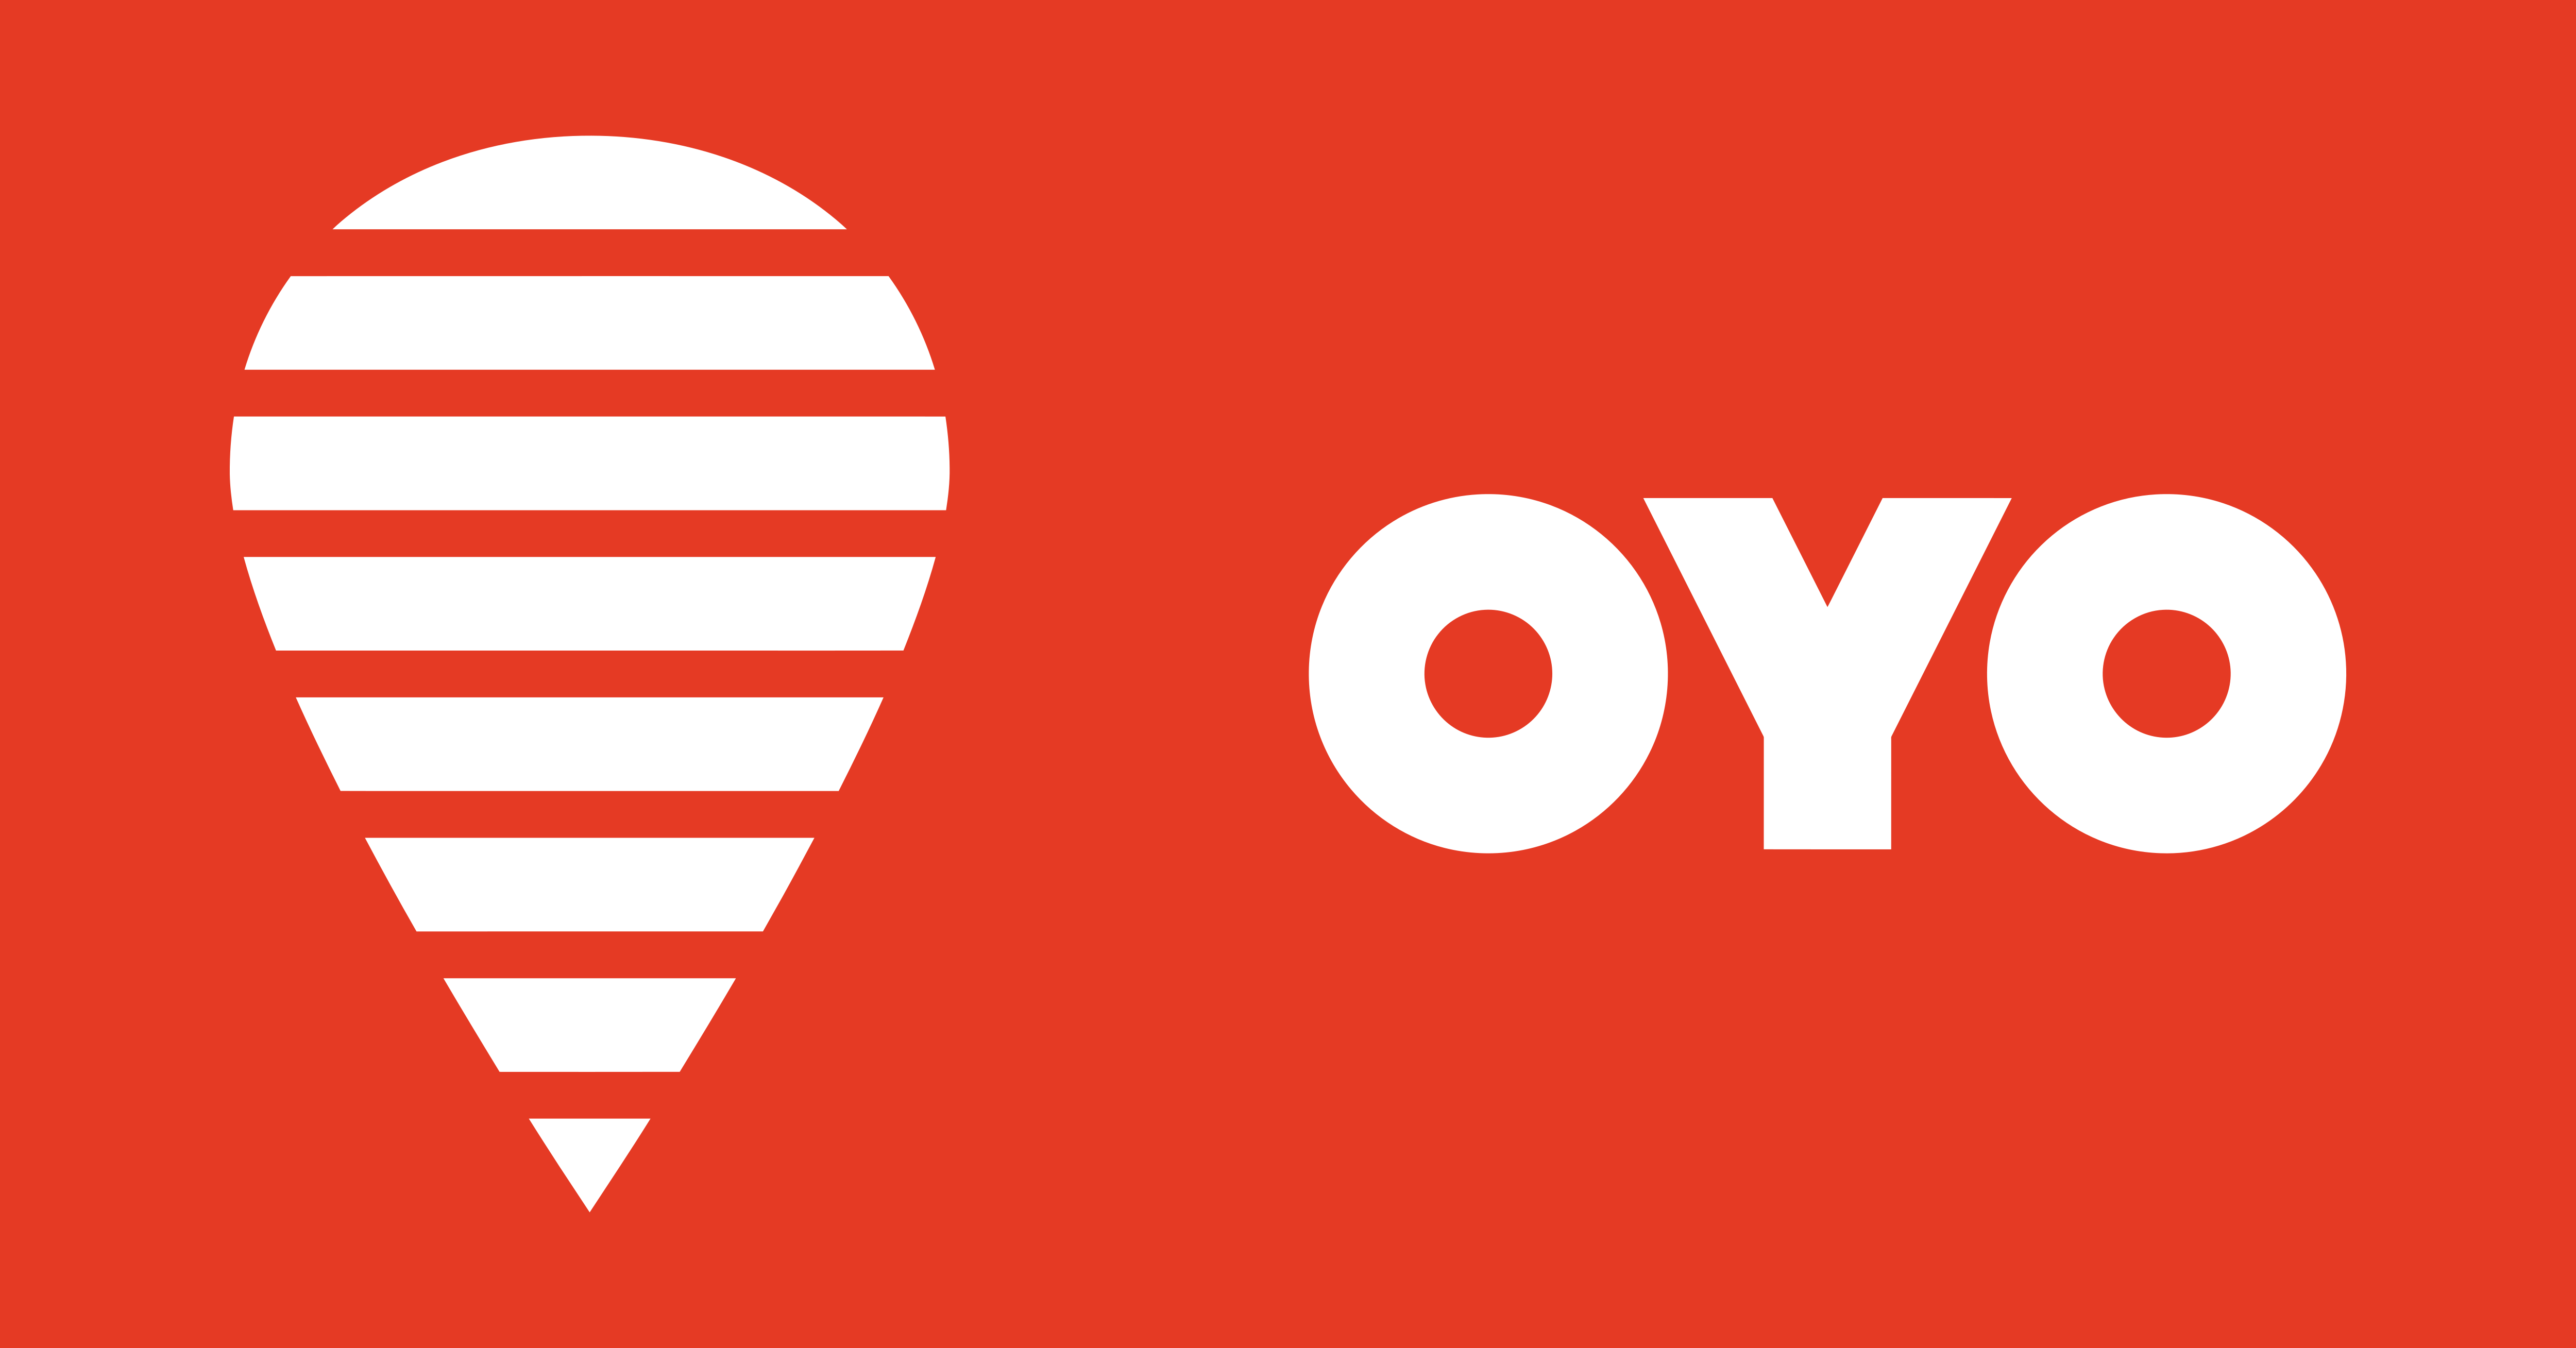 OYO का मालिक कौन है? जानिए OYO कंपनी के बारे में सब कुछ।